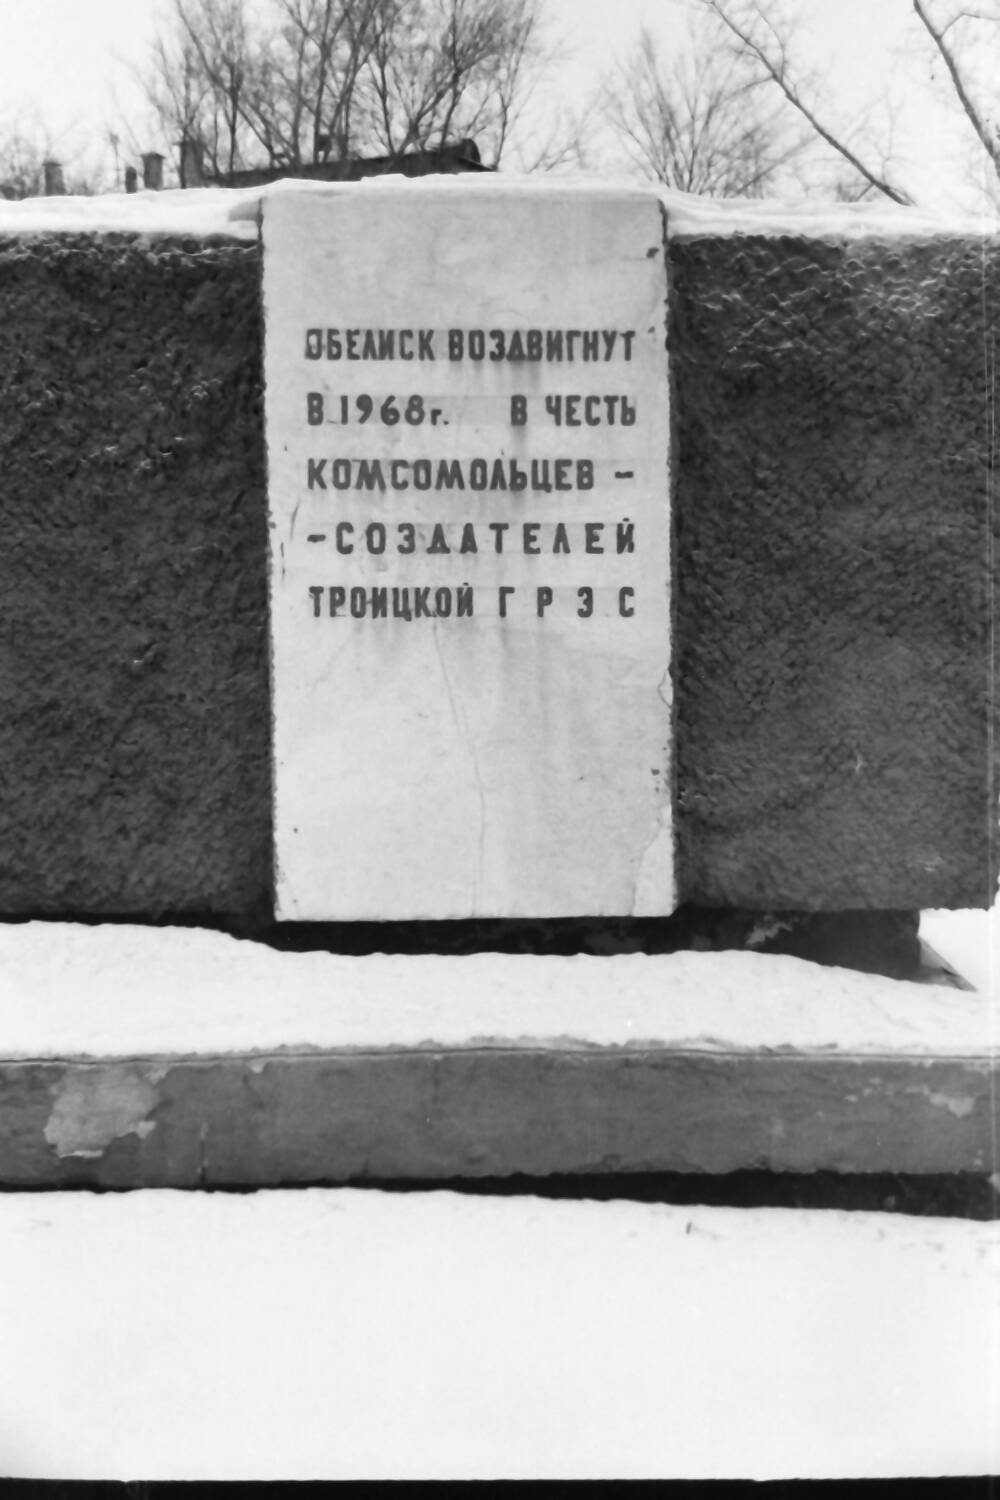 Негатив.  Мемориальная доска на обелиске воздвигнутый в 1968 году в честь комсомольцев - создателей Троицкой ГРЭС. г. Троицк.